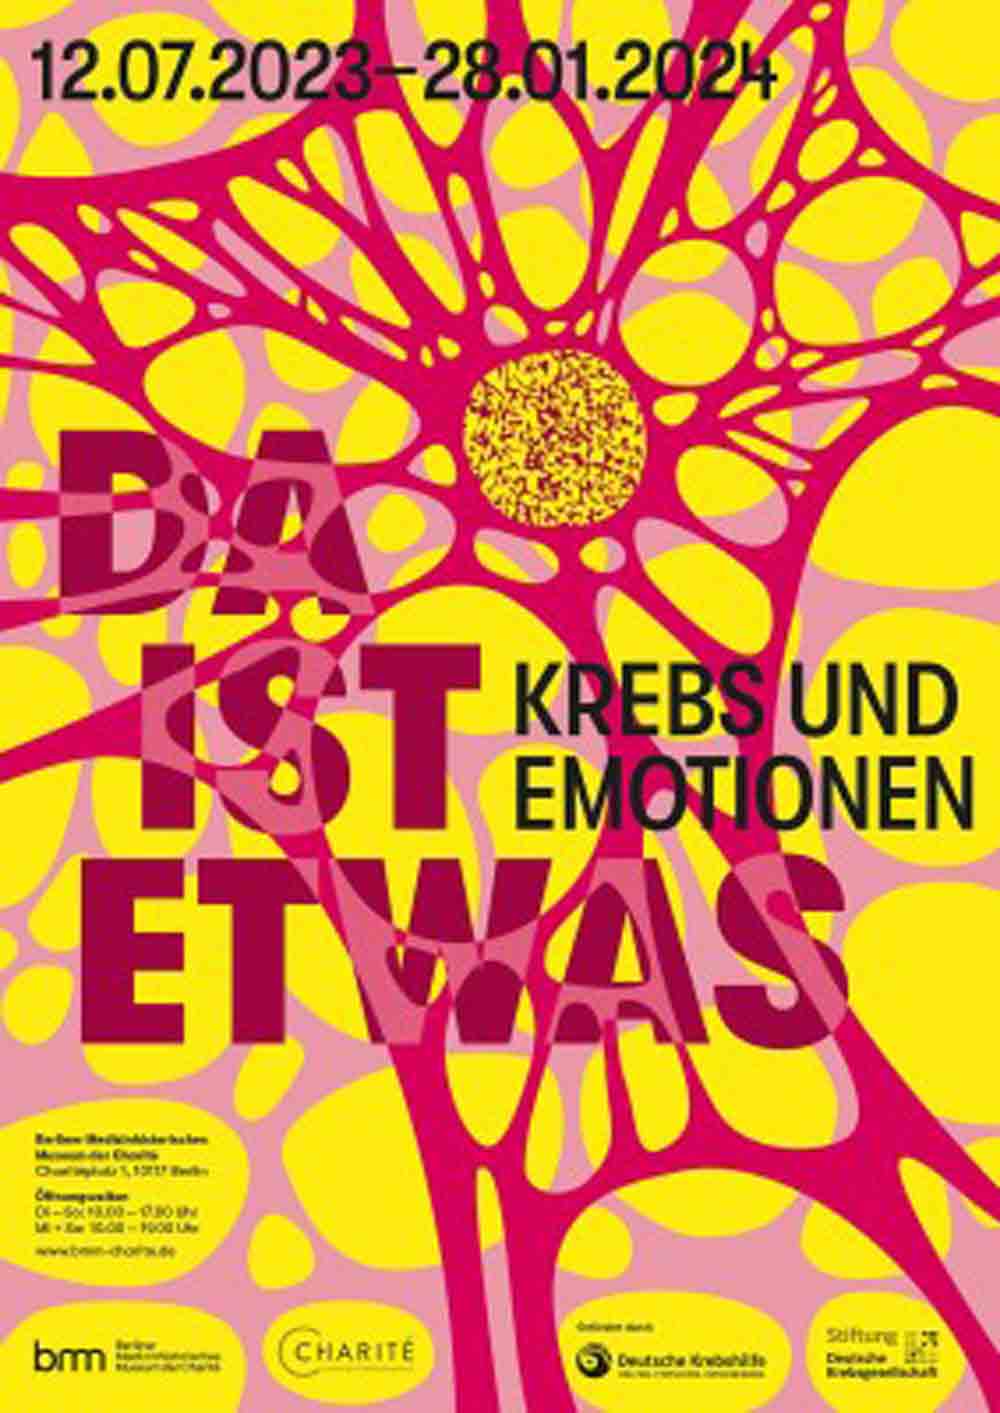 »Da ist etwas. Krebs und Emotionen« im Medizinhistorischen Museum Berlin, 12. Juli 2023 bis 28. Januar 2024